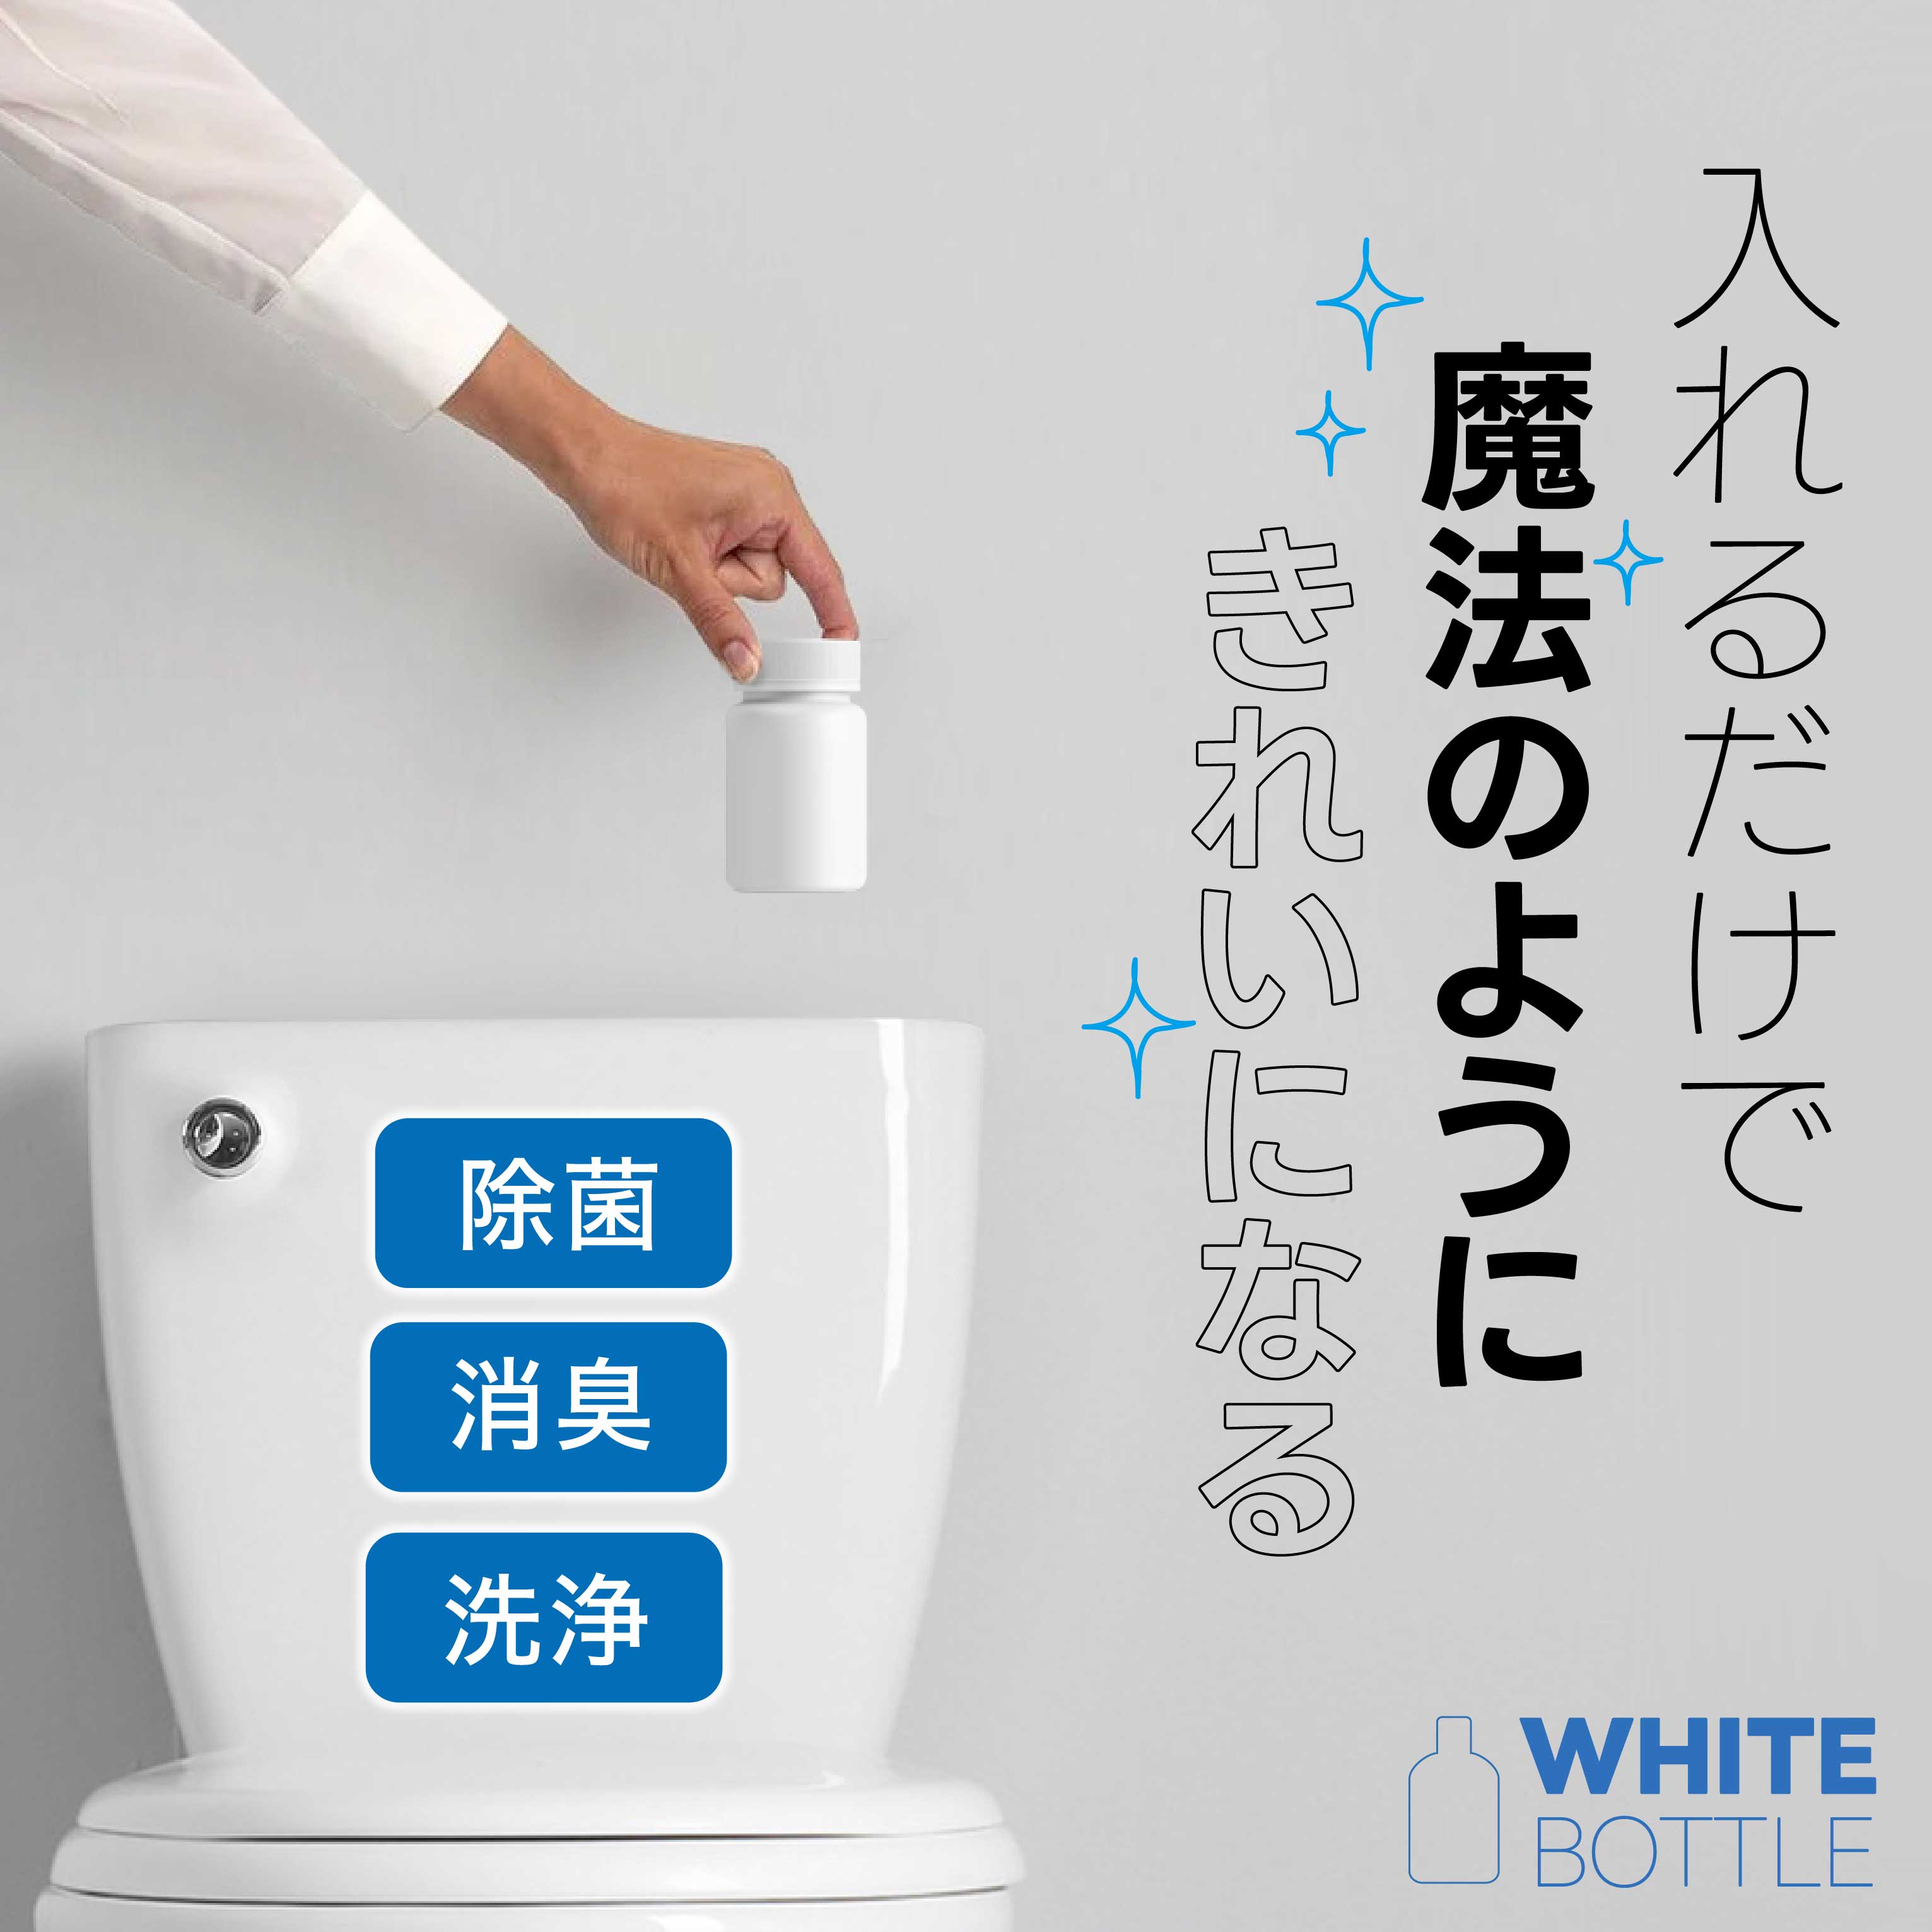 WHITE BOTTLE 『The Toilet』